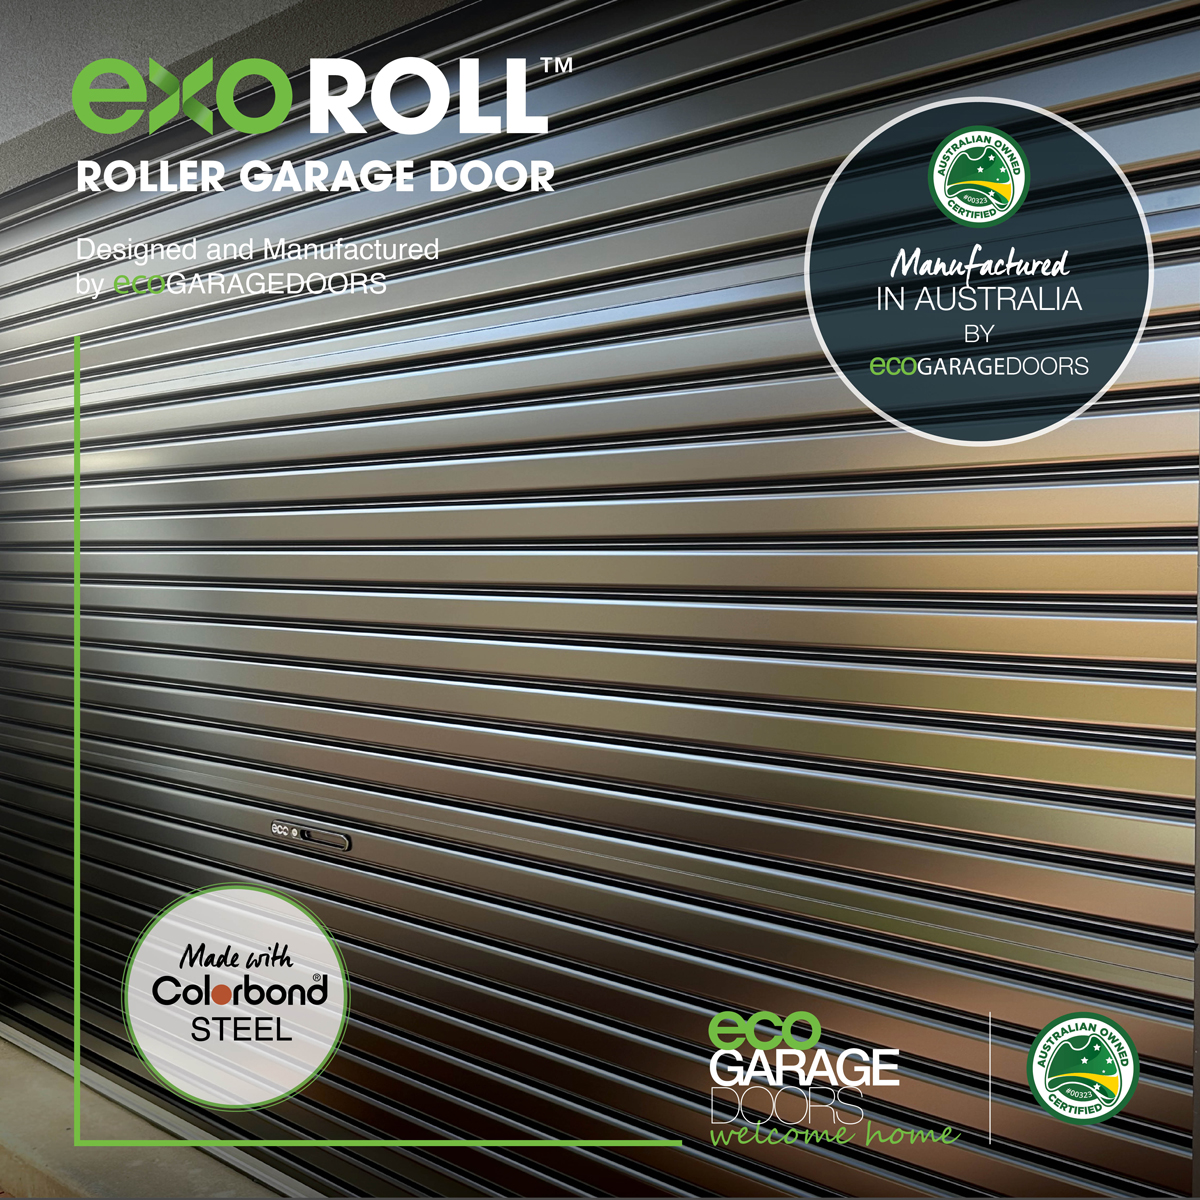 ExoRoll-roller-garage-door